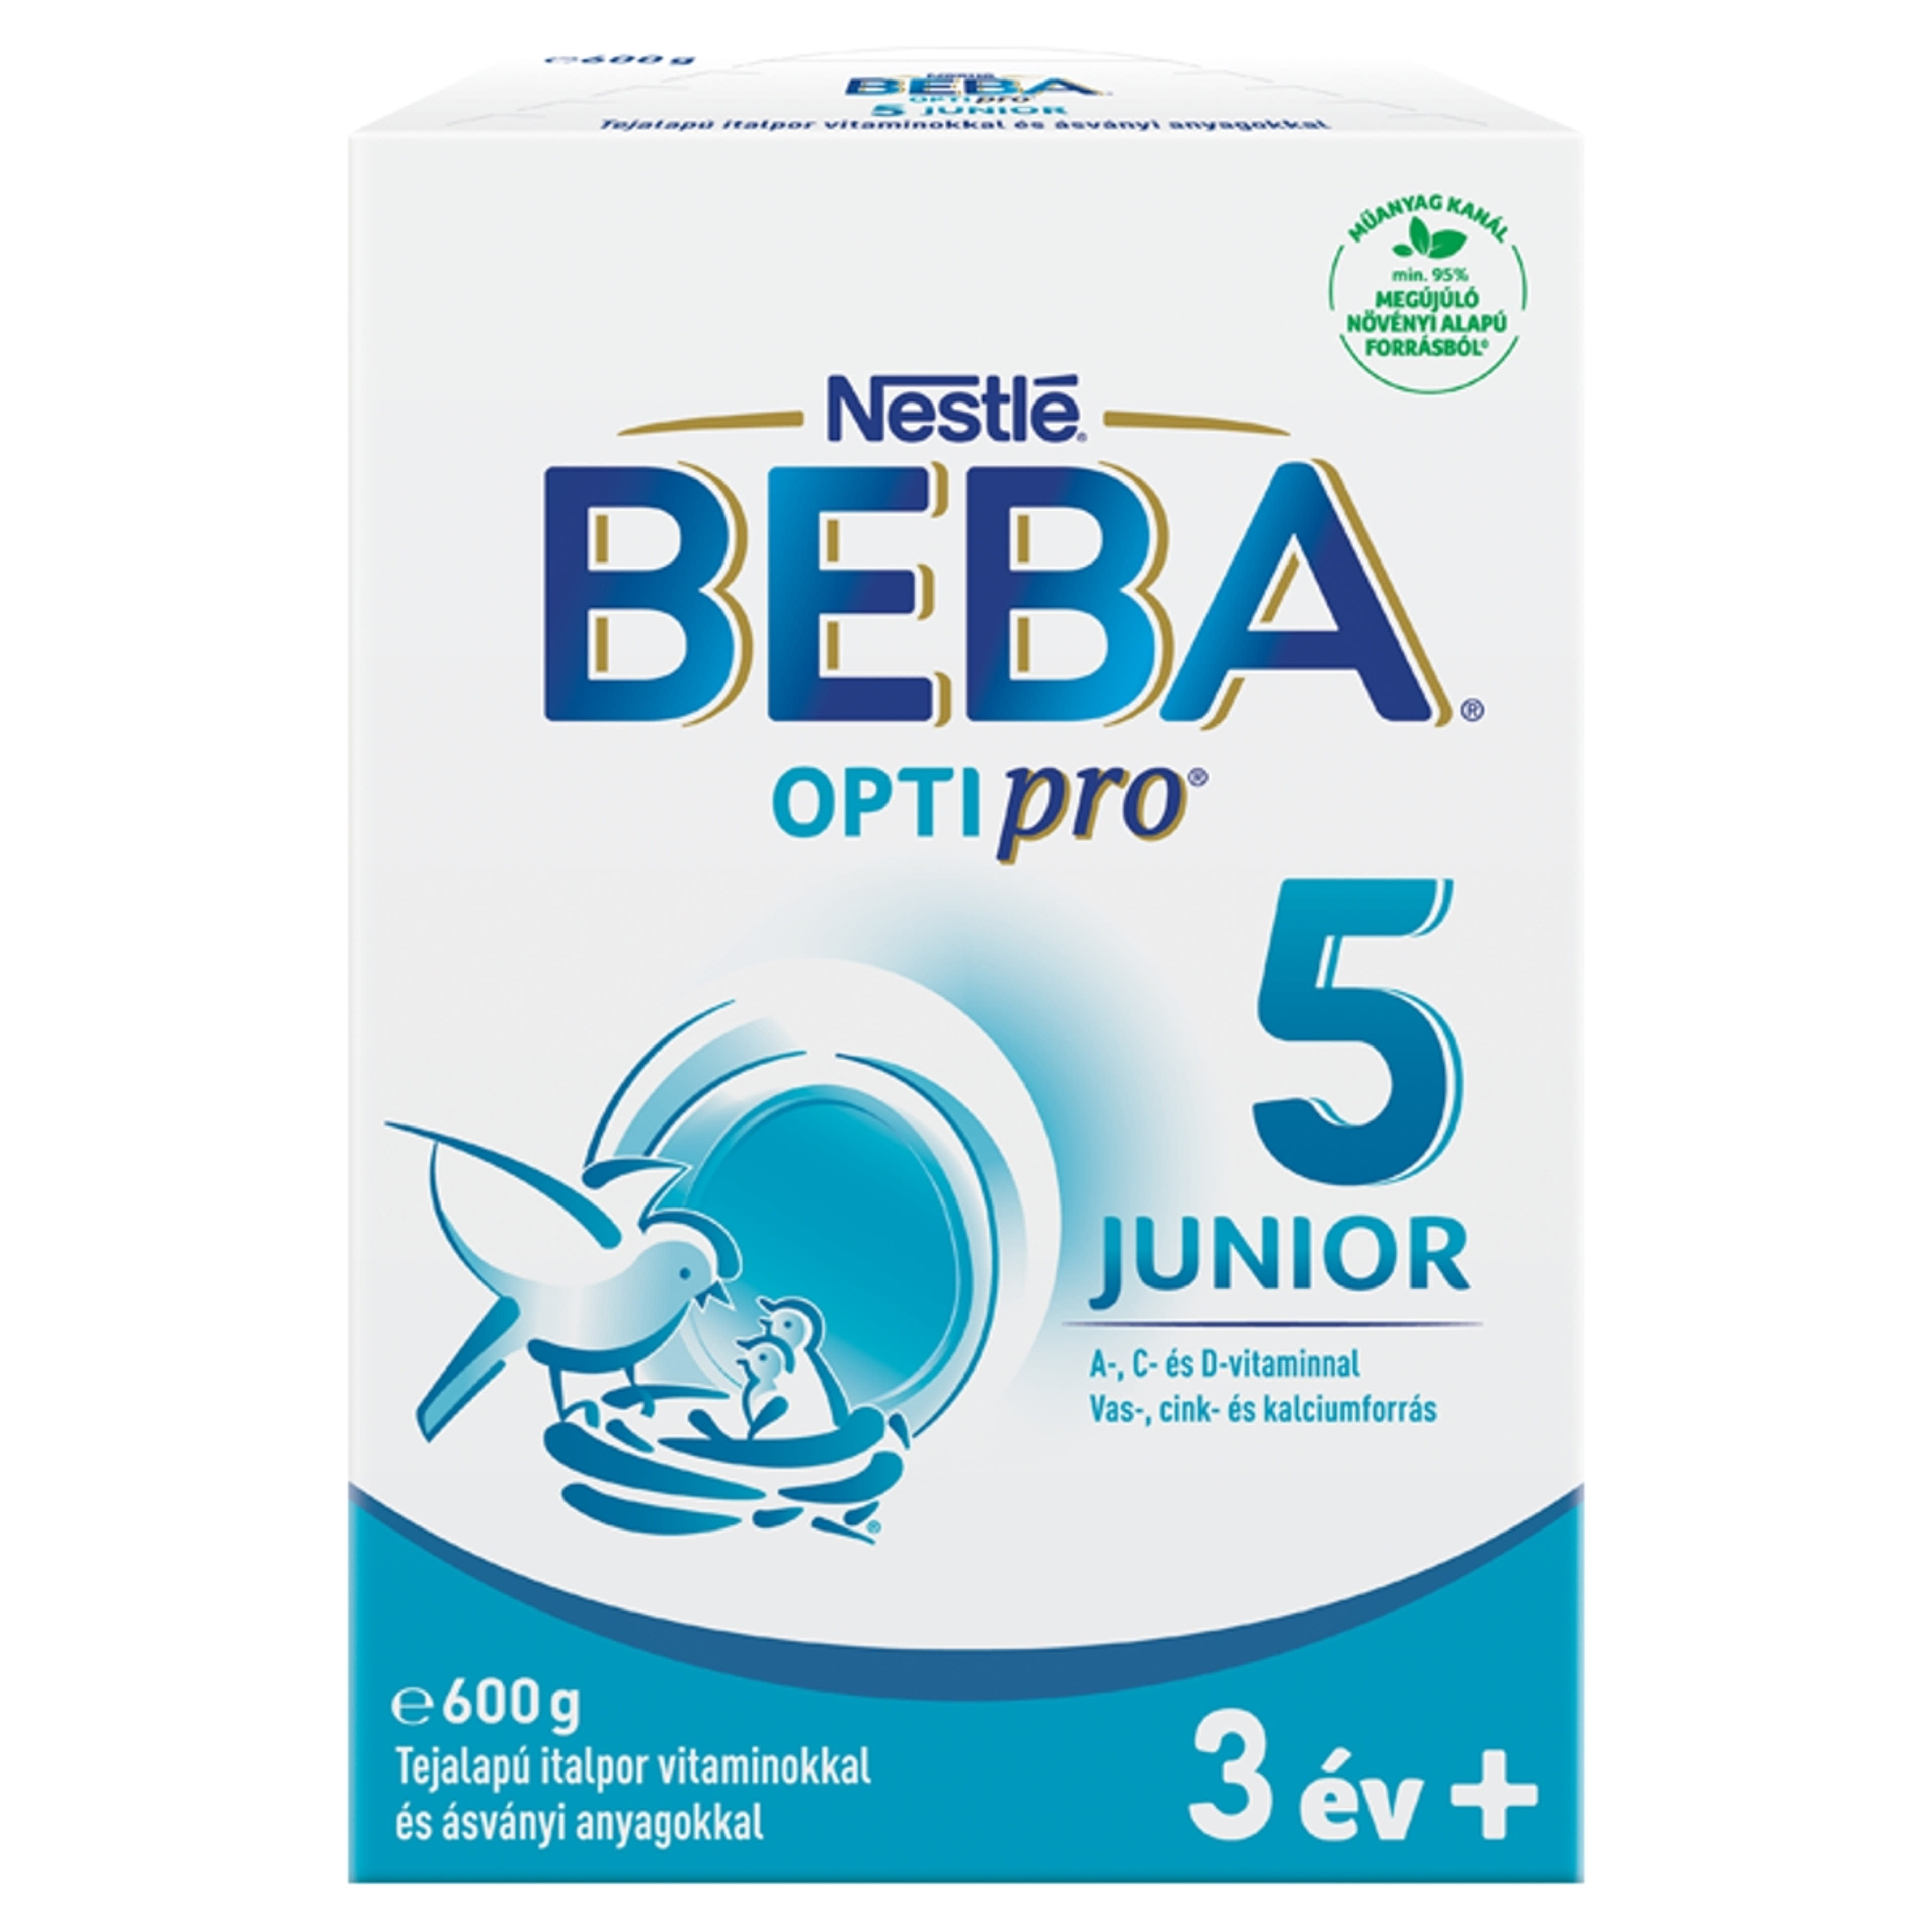 Beba Optipro 5 Junior tejalapú italpor vitaminokkal és ásványi anyagokkal 36 hónapos kortól - 600 g